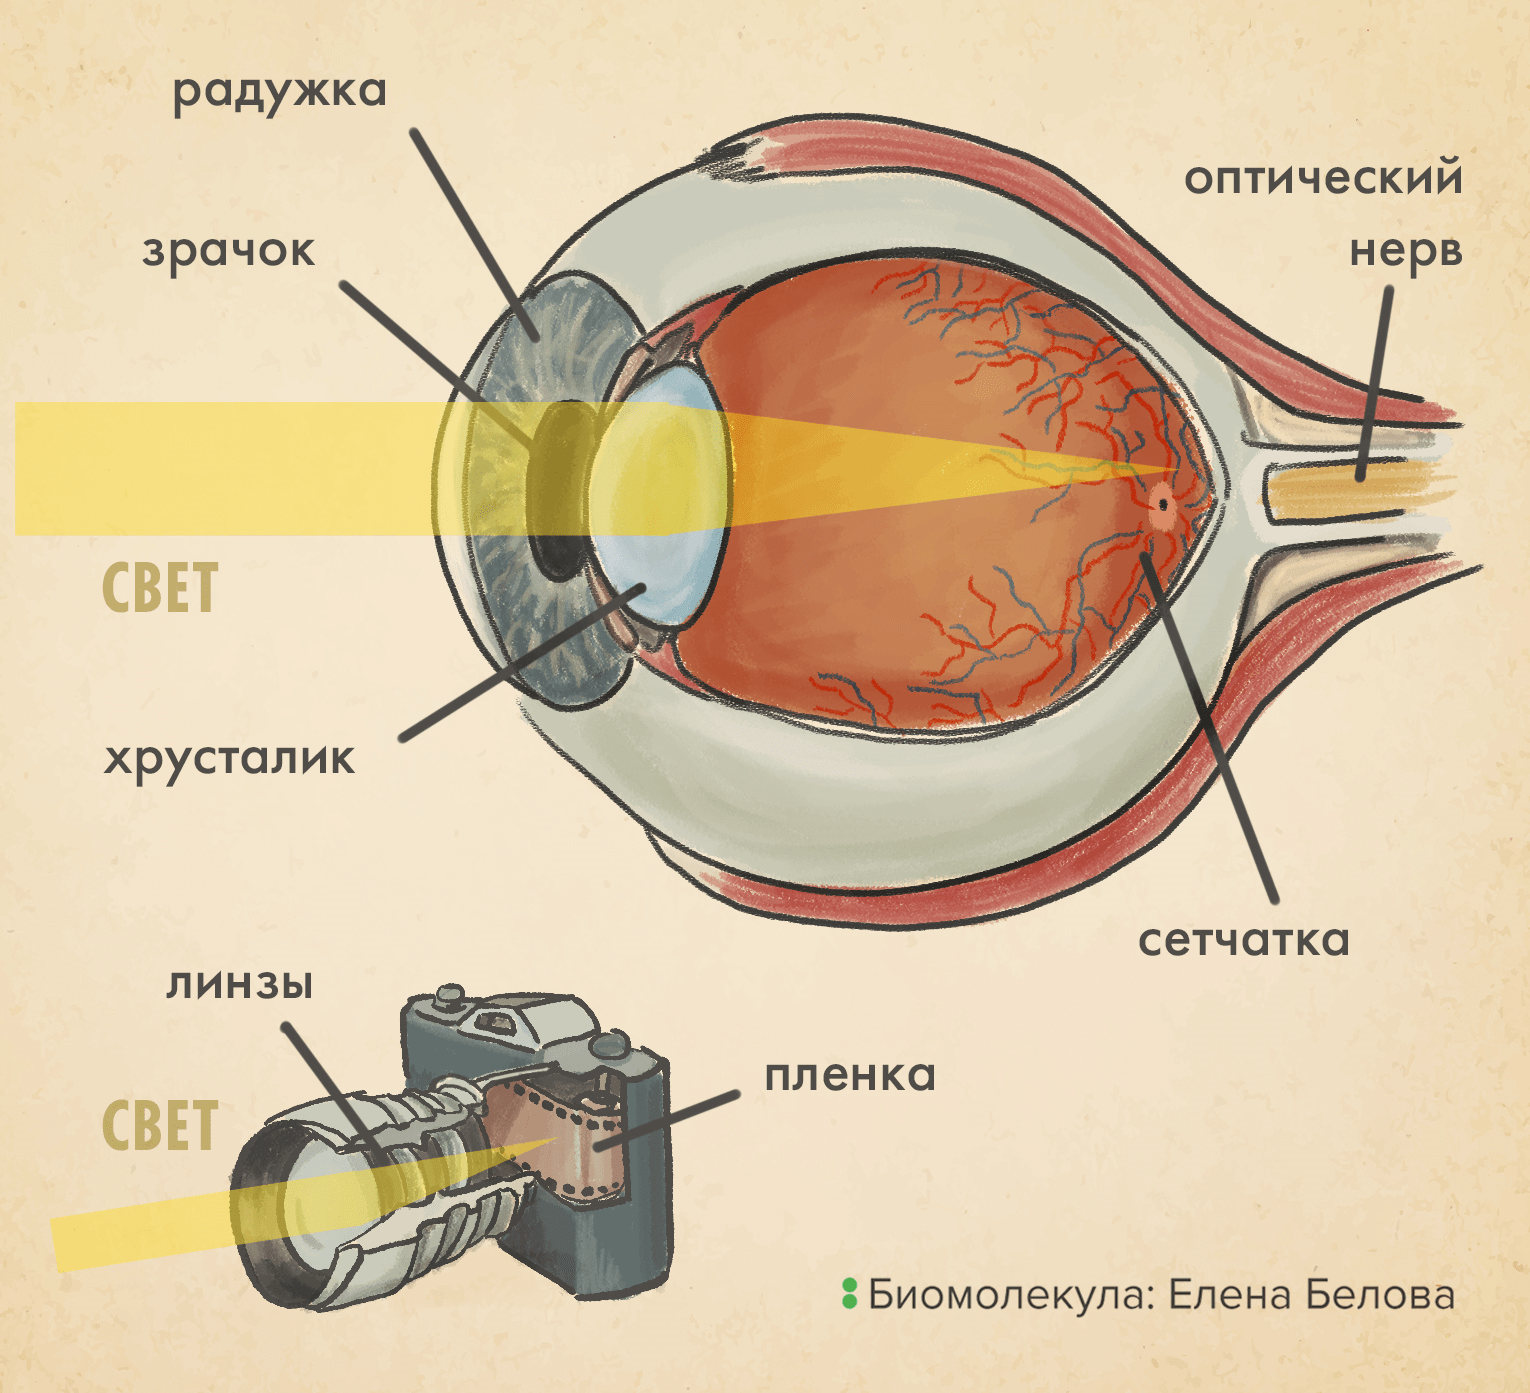 Сходство оптической системы глаза и аналогового фотоаппарата